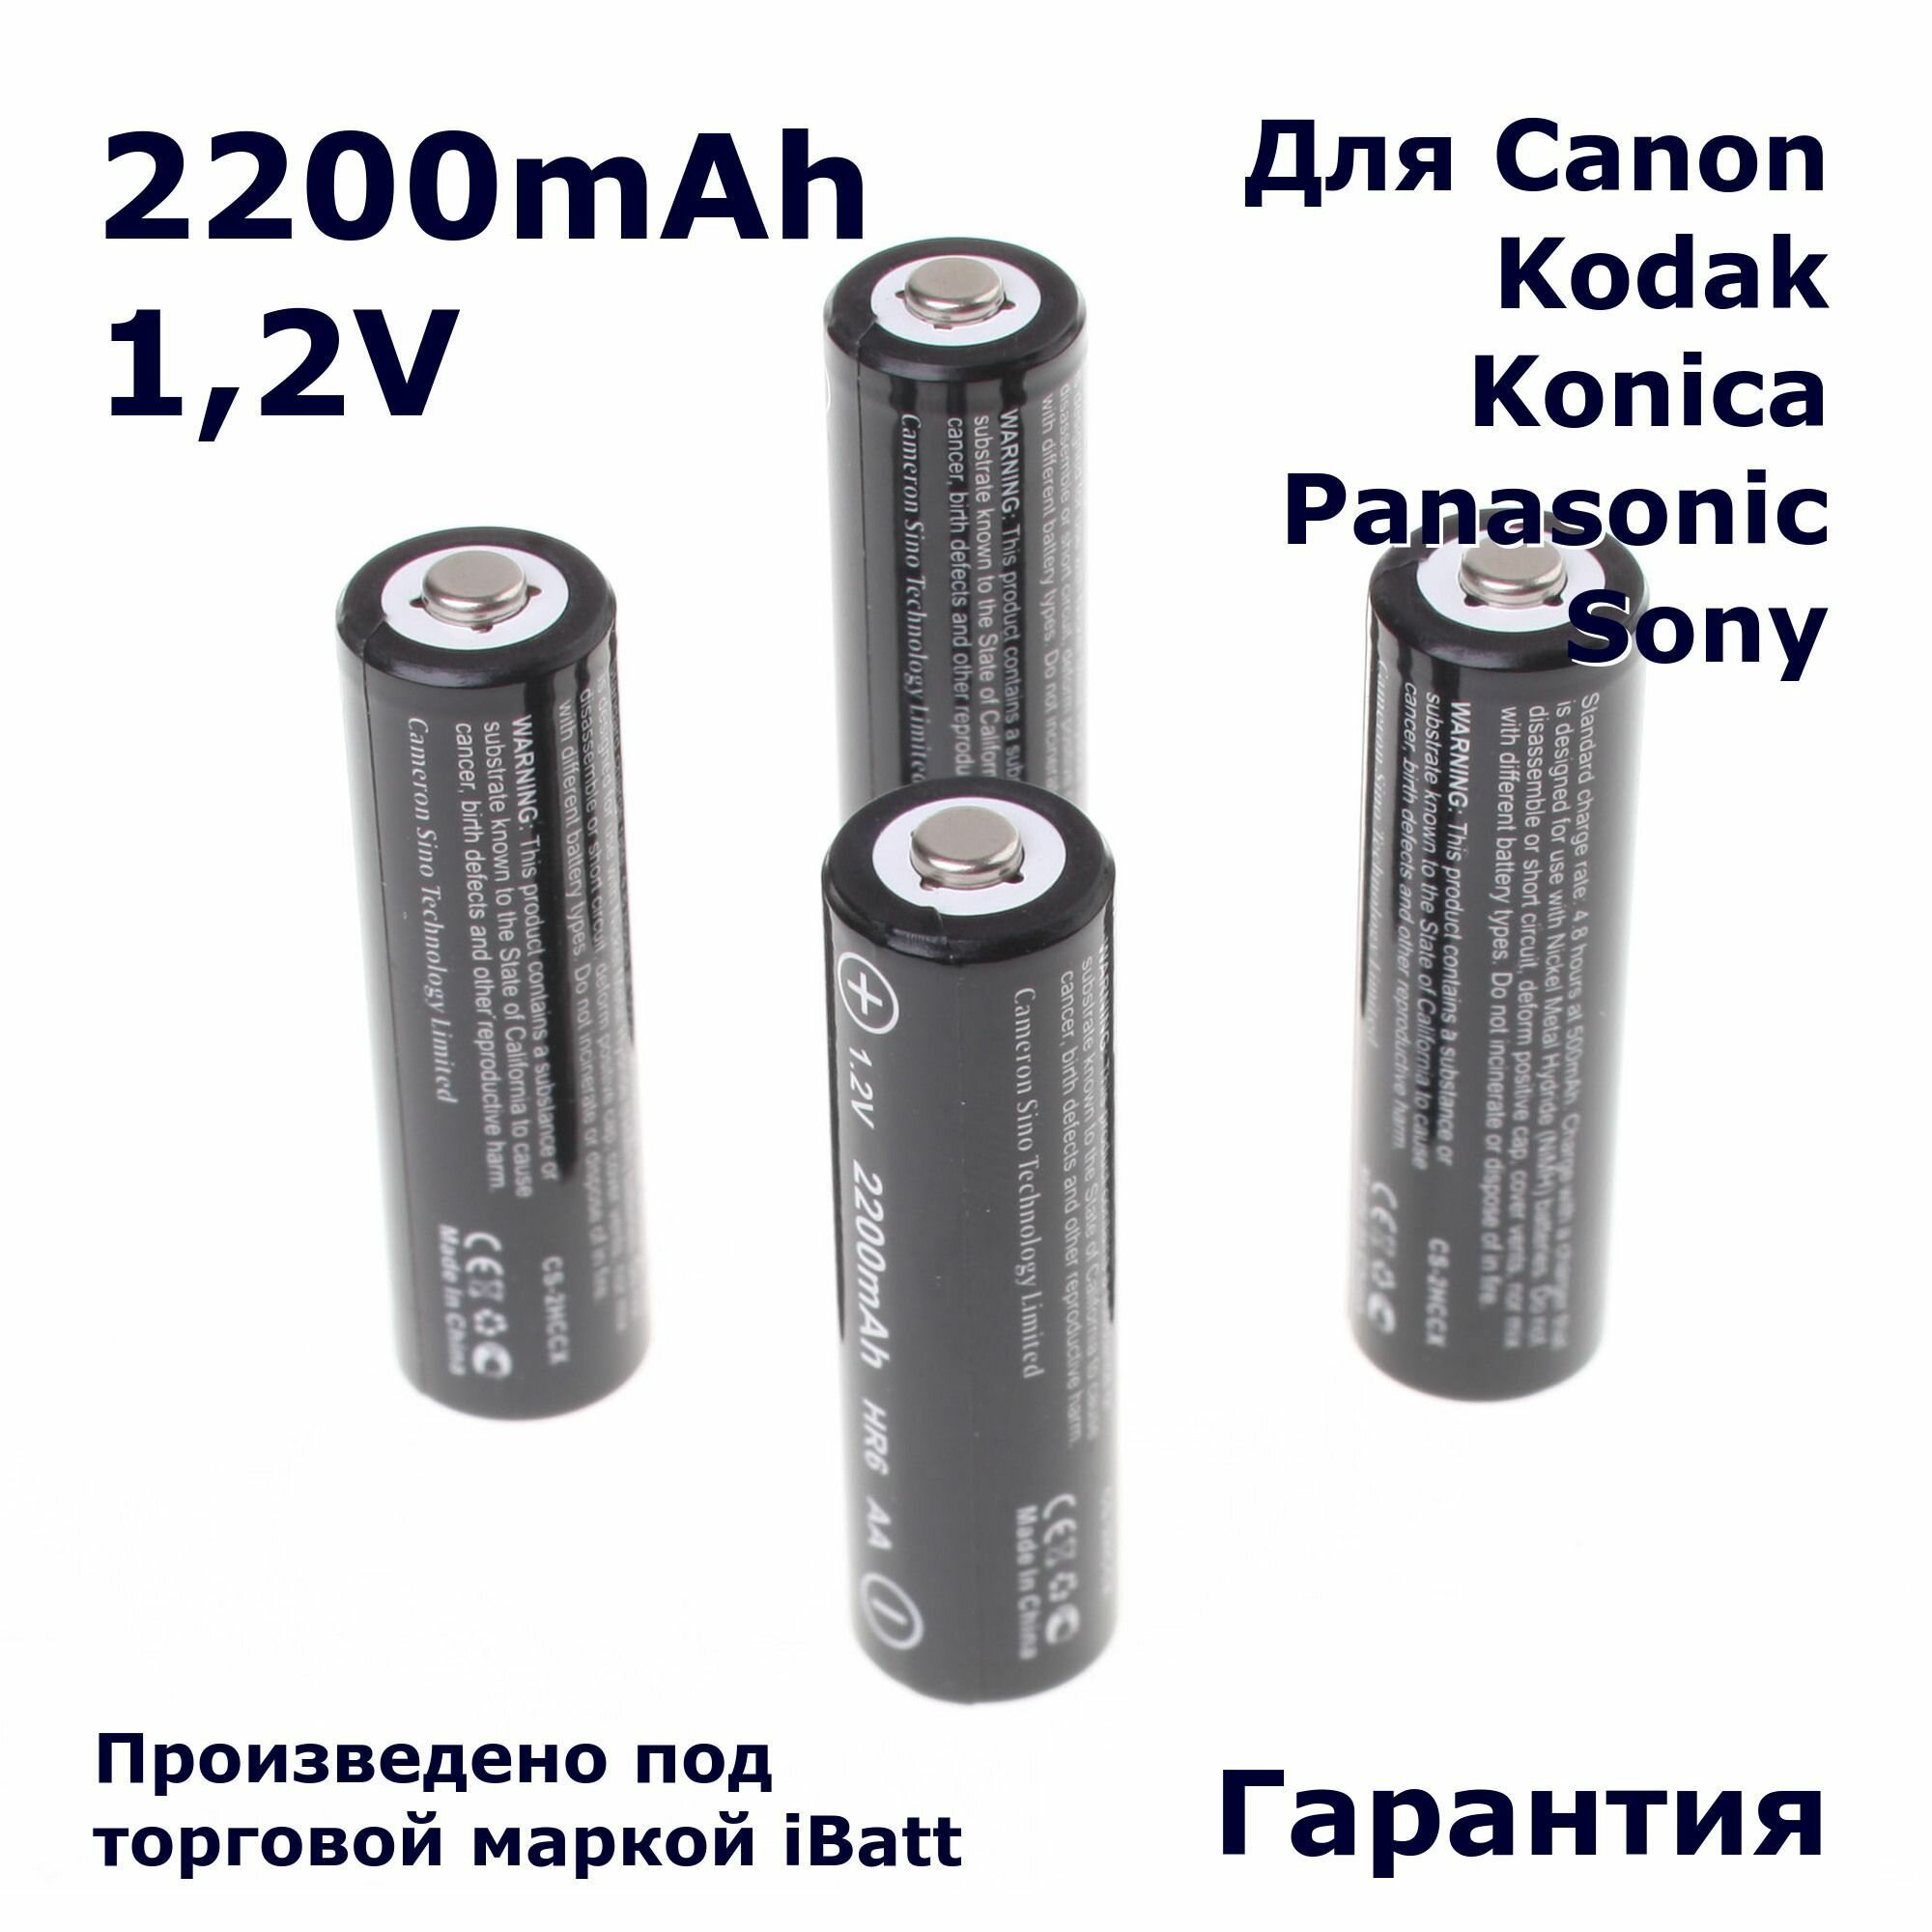 Аккумуляторная батарея iBatt iB-T1-F419 2200mAh для камер PowerShot S5 IS PowerShot SX150 IS PowerShot SX20 IS PowerShot SX130 IS PowerShot S3 IS PowerShot SX10 IS PowerShot SX120 IS PowerShot SX100 IS PowerShot A480